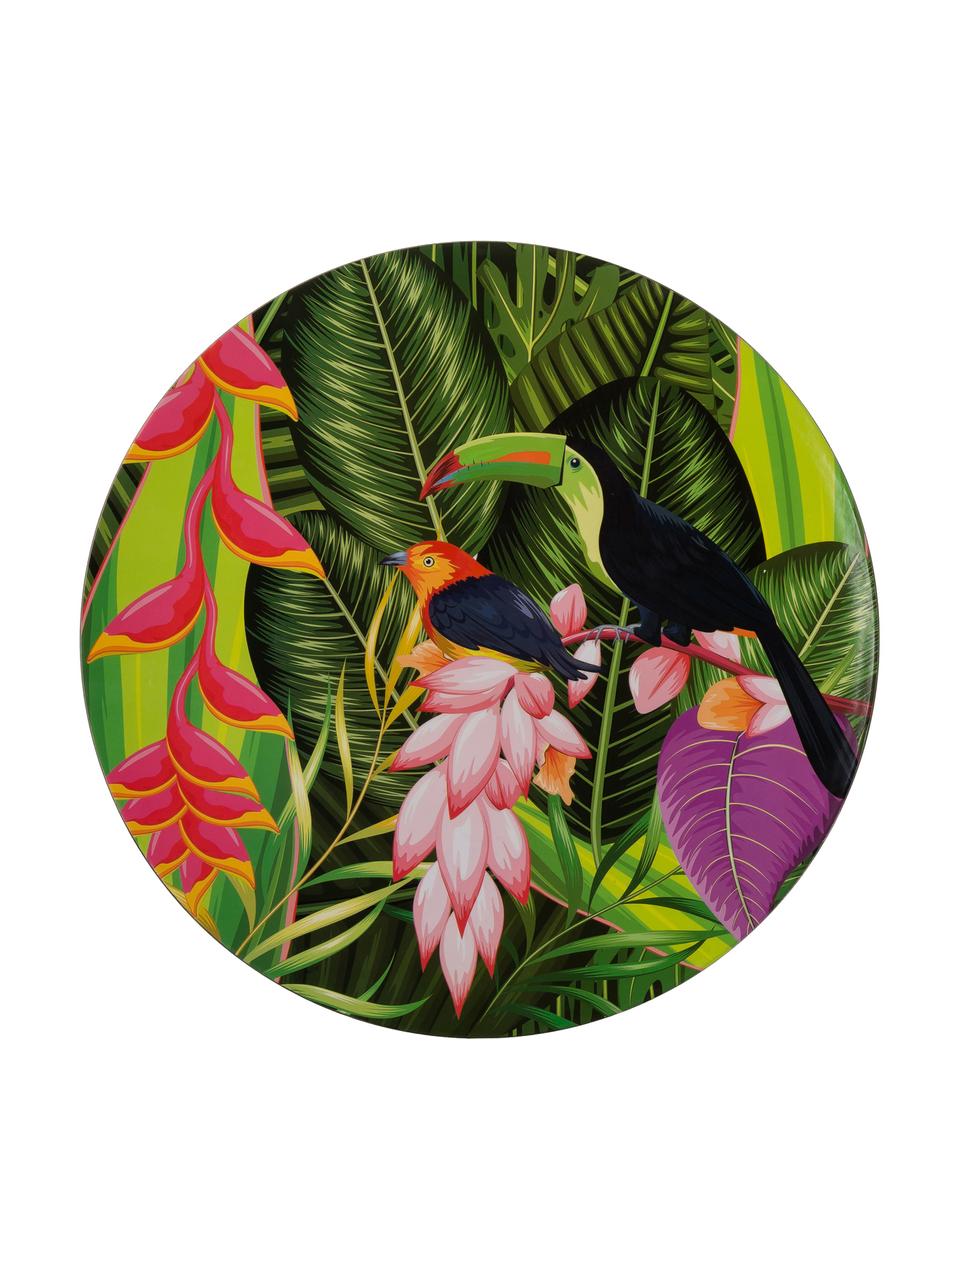 Onderborden Tropical Bird, 2 stuks, Polypropyleen, met papier gecoat, Groentinten, roze, lila, oranje, zwart, Ø 33 cm